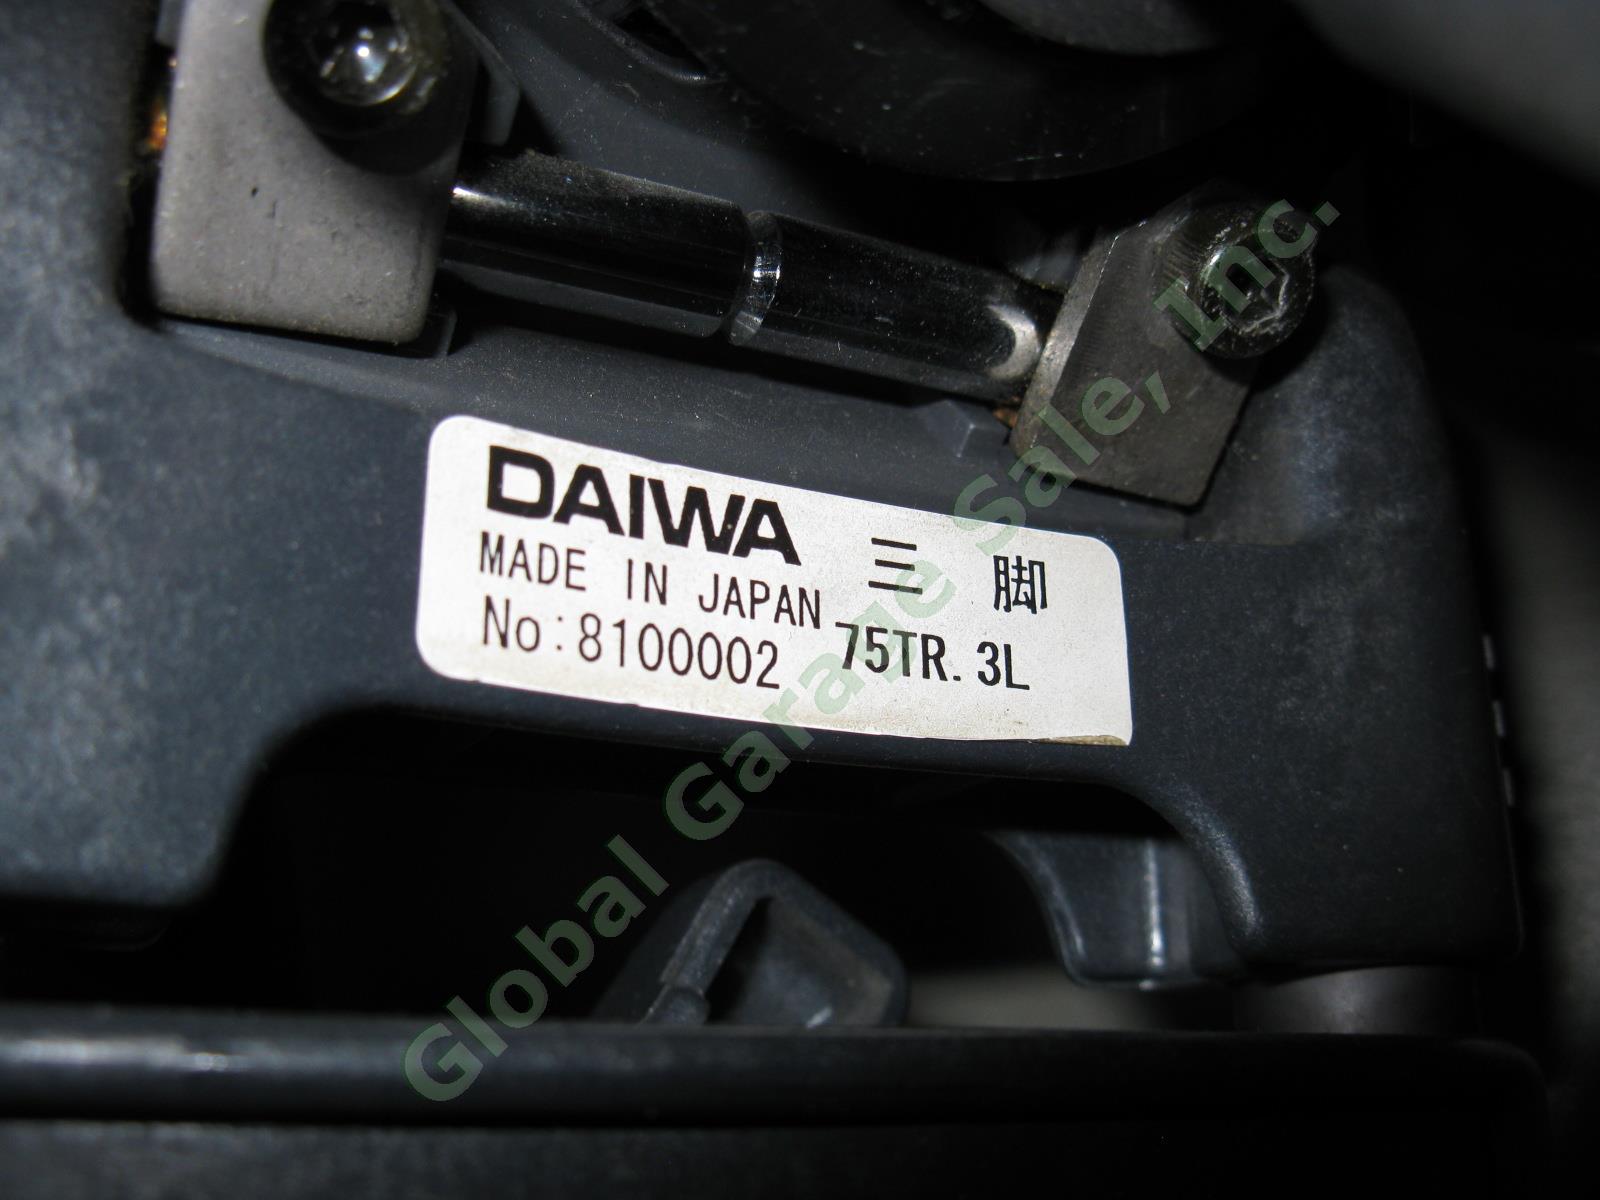 Daiwa CSI TD20 Tripod W/ ENG Fluid Head Video Cam Camera Camcorder Balancer Lot 3